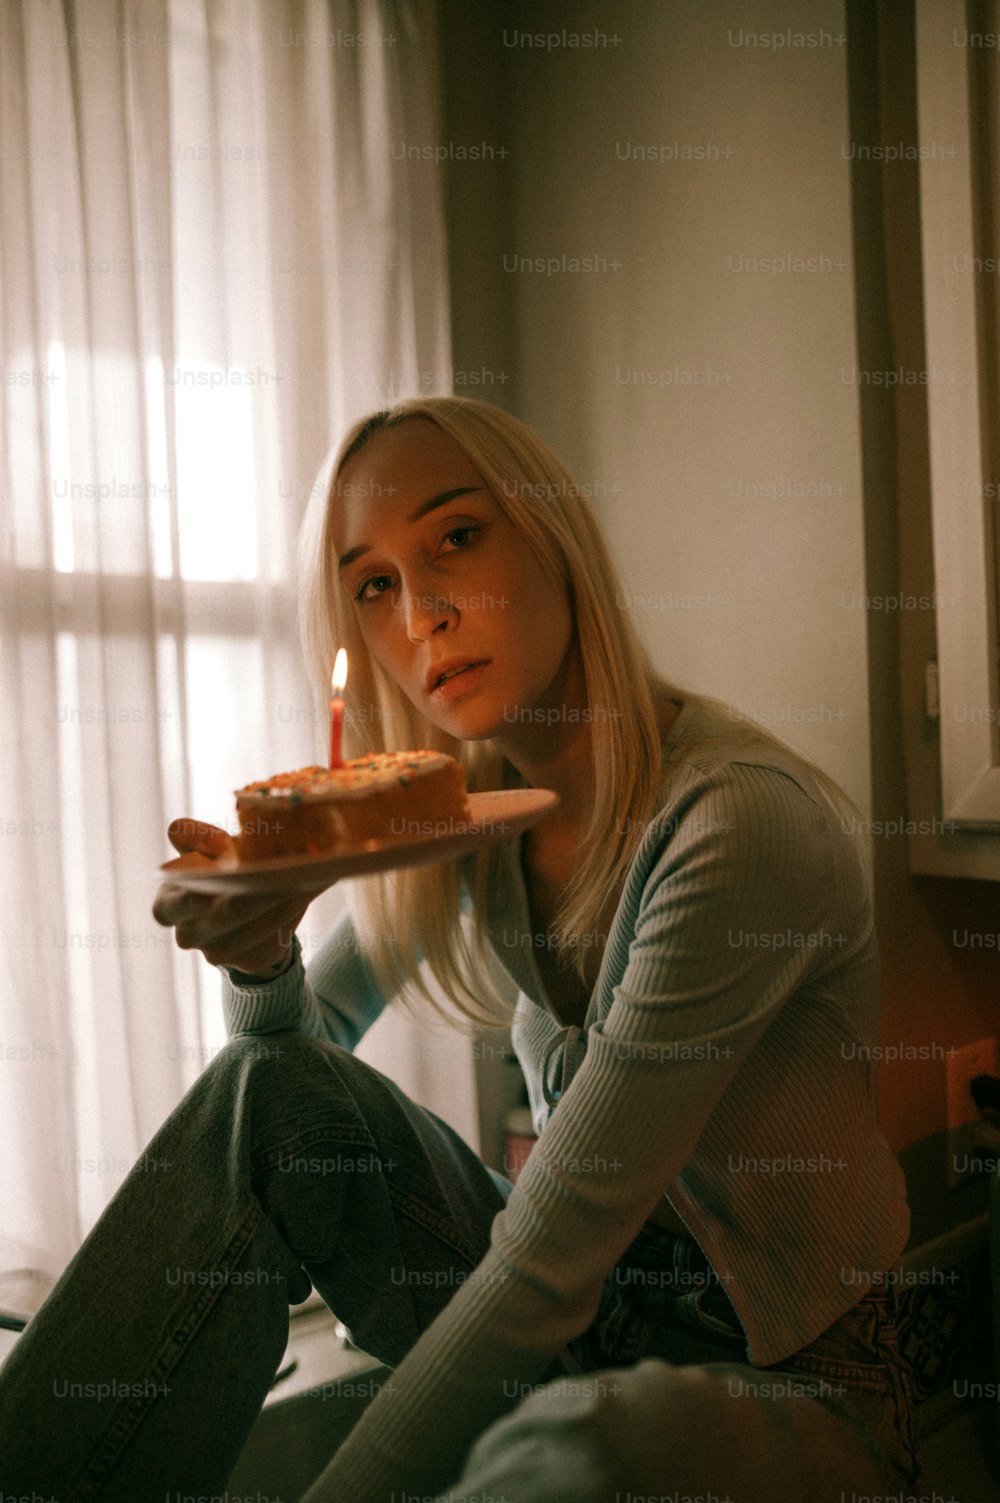 Eine Frau sitzt auf einem Bett und hält ein Stück Kuchen in der Hand